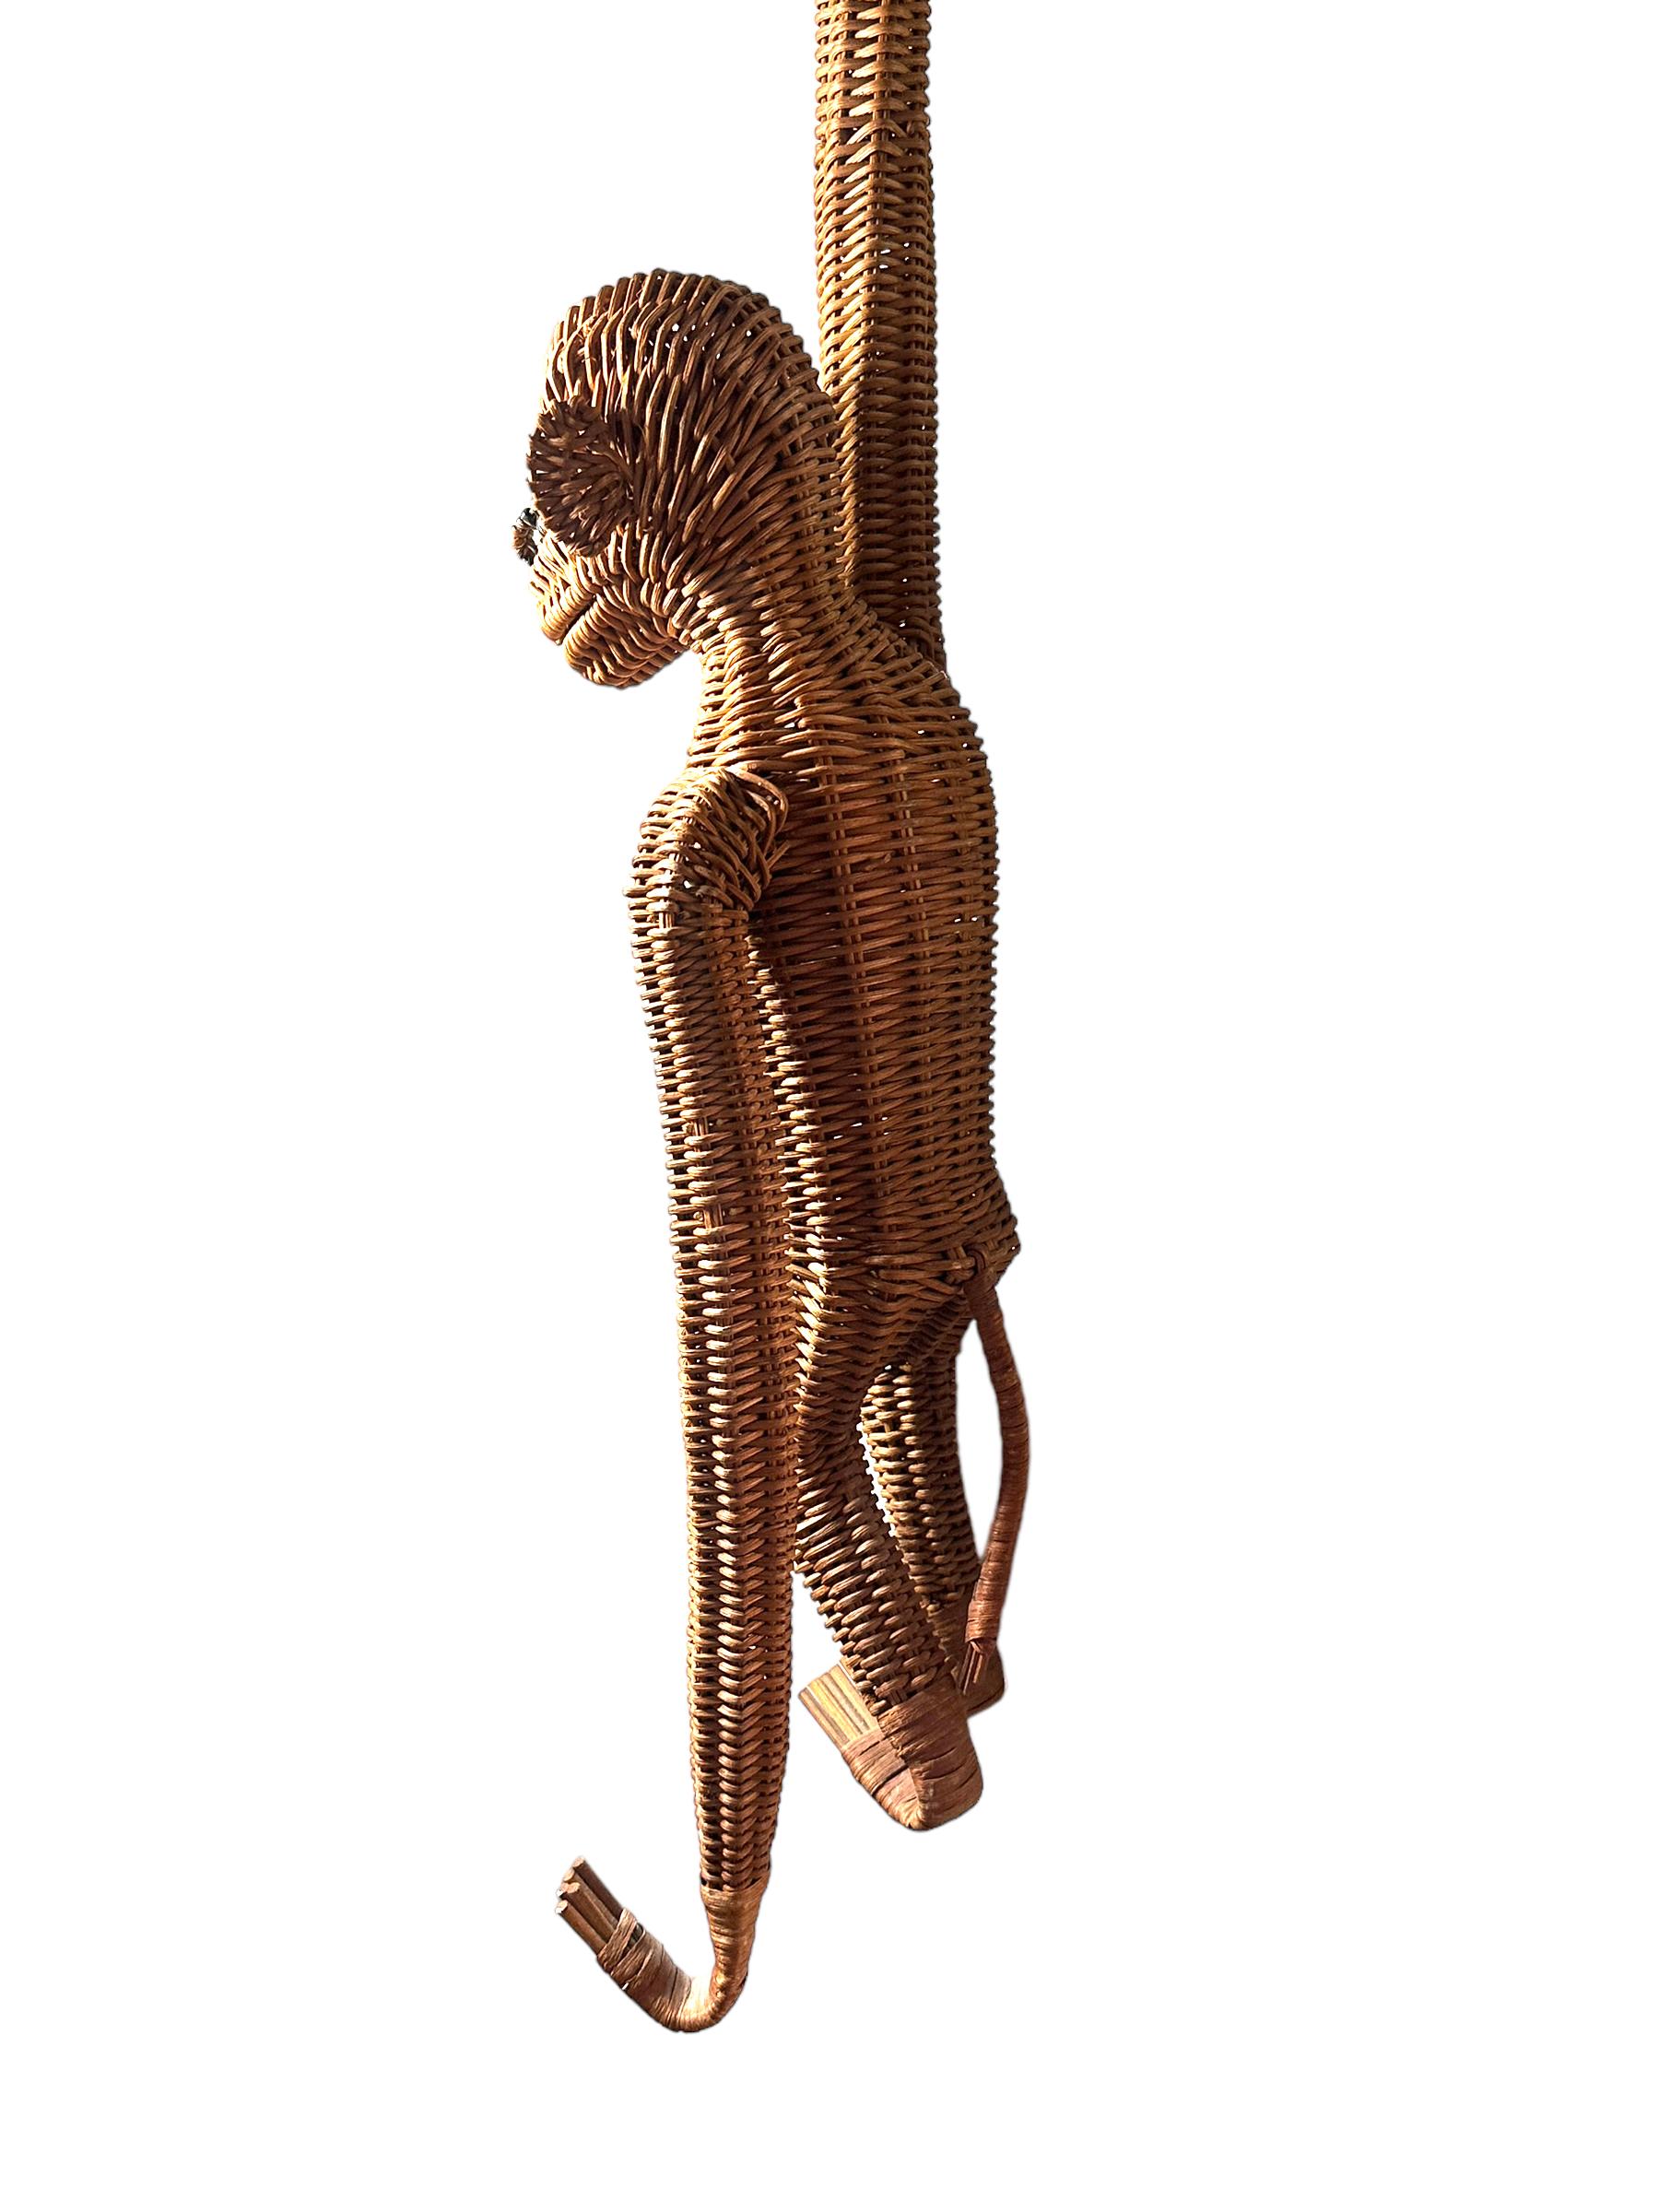 Fin du 20e siècle Figure suspendue mi-siècle moderne Monkey Ape Rattan Wicker des années 1970, France en vente